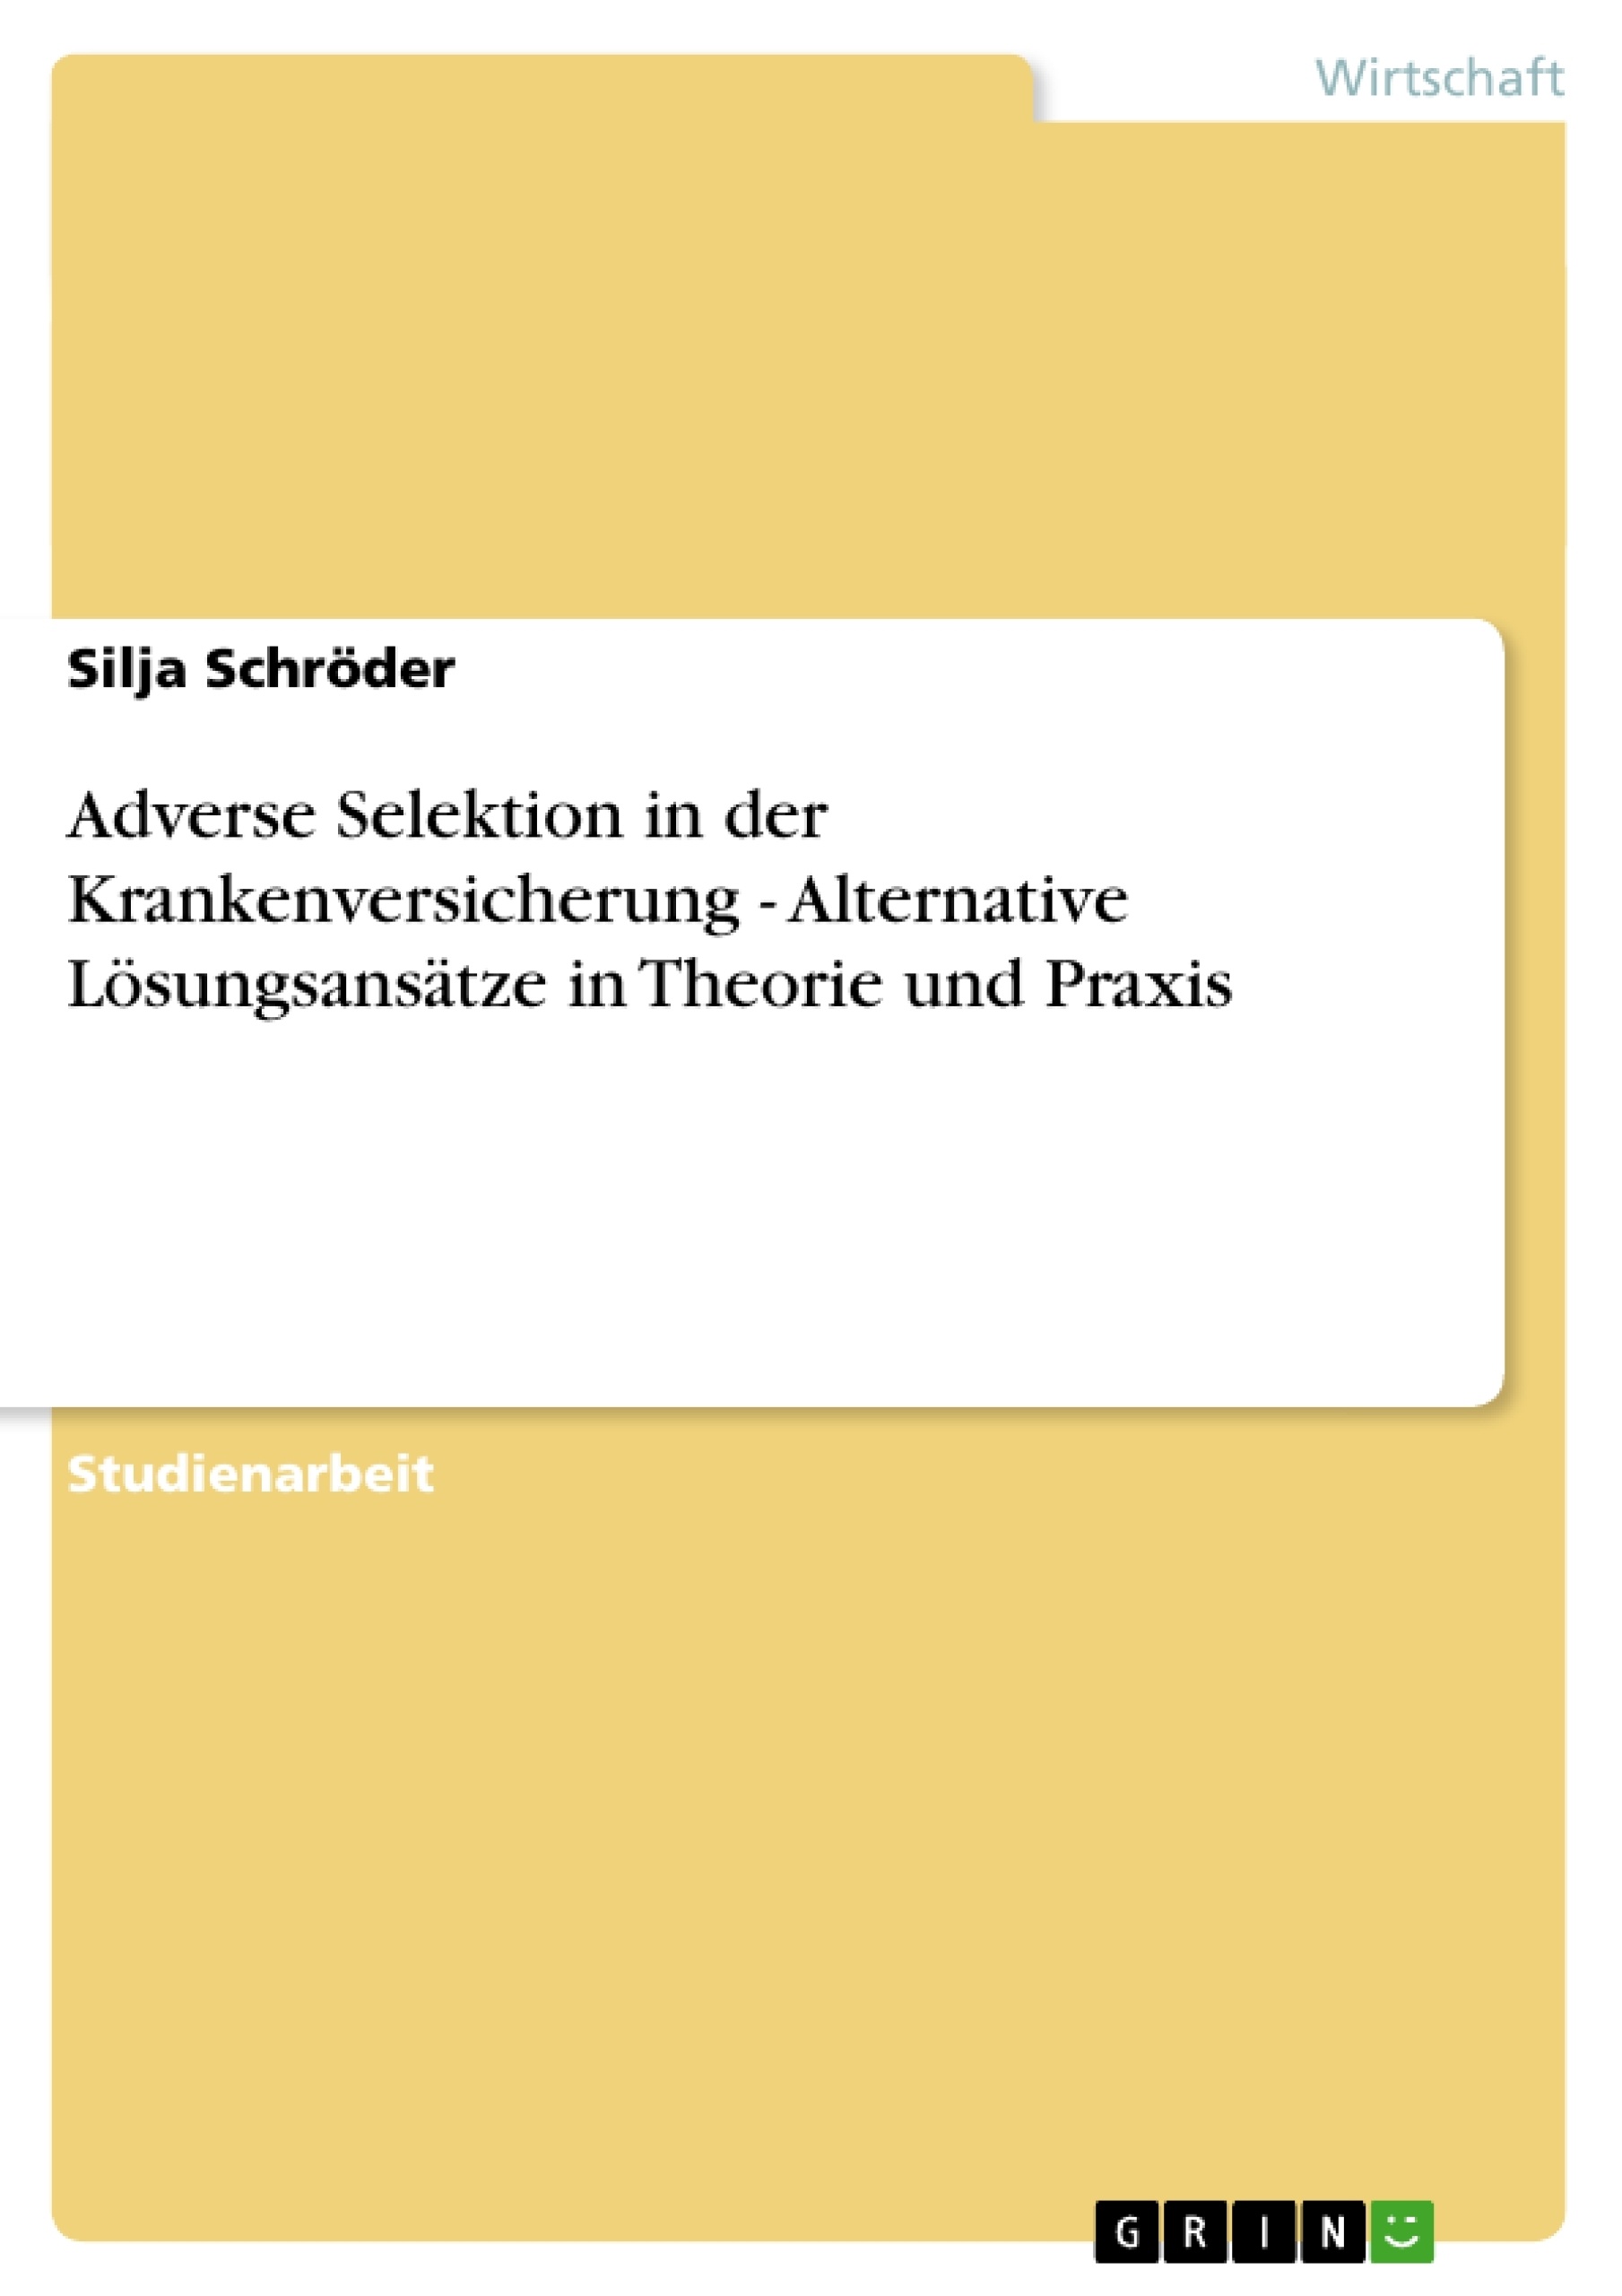 Titre: Adverse Selektion in der Krankenversicherung - Alternative Lösungsansätze in Theorie und Praxis